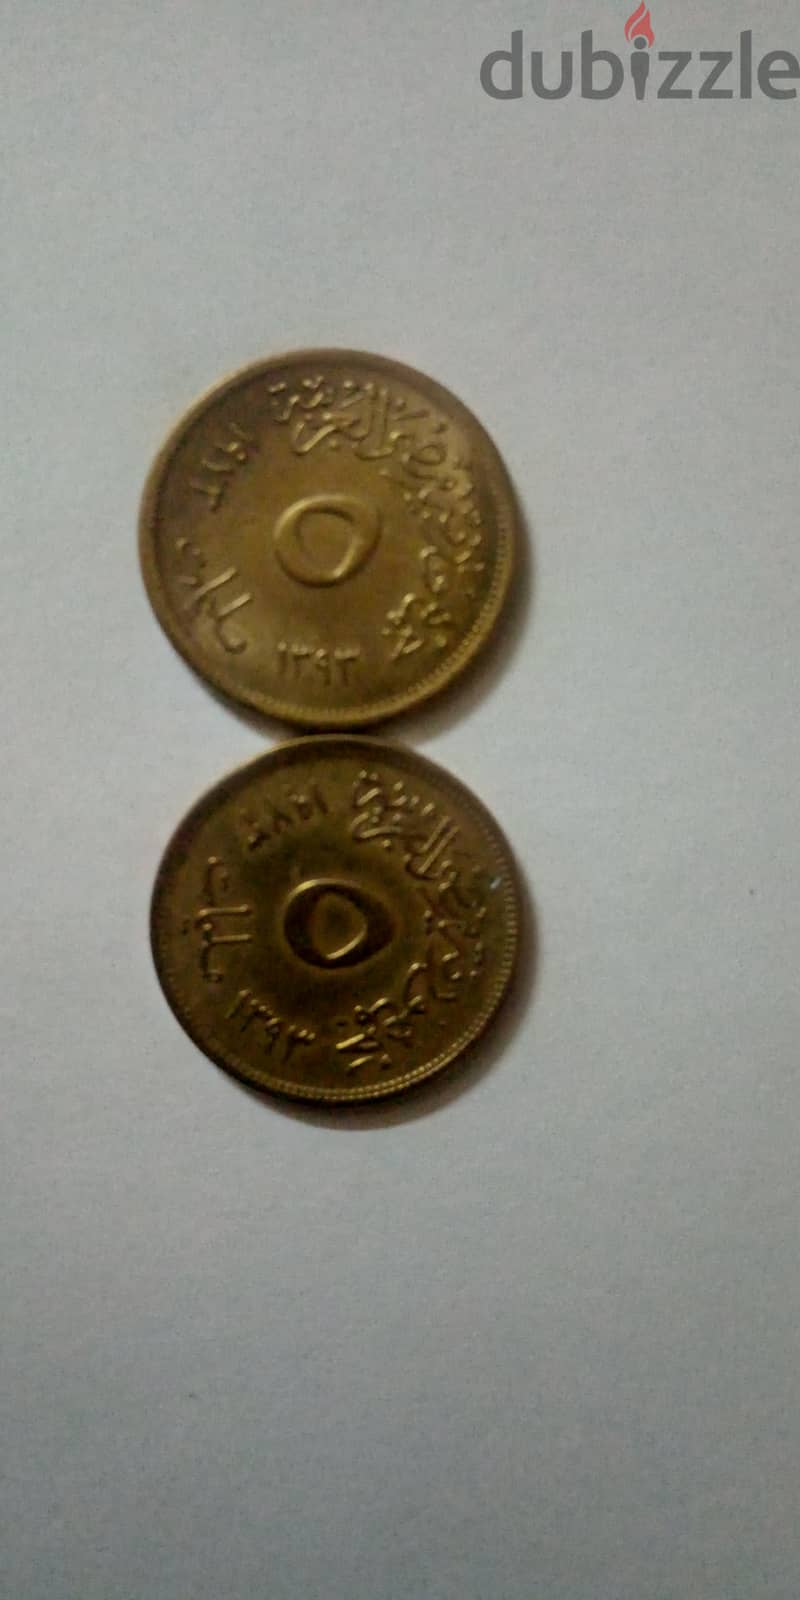 مجموعة نادرة من 10عملات معدنية نحاسية من فئة 5 مليمات مصرية اصدار 1973 7